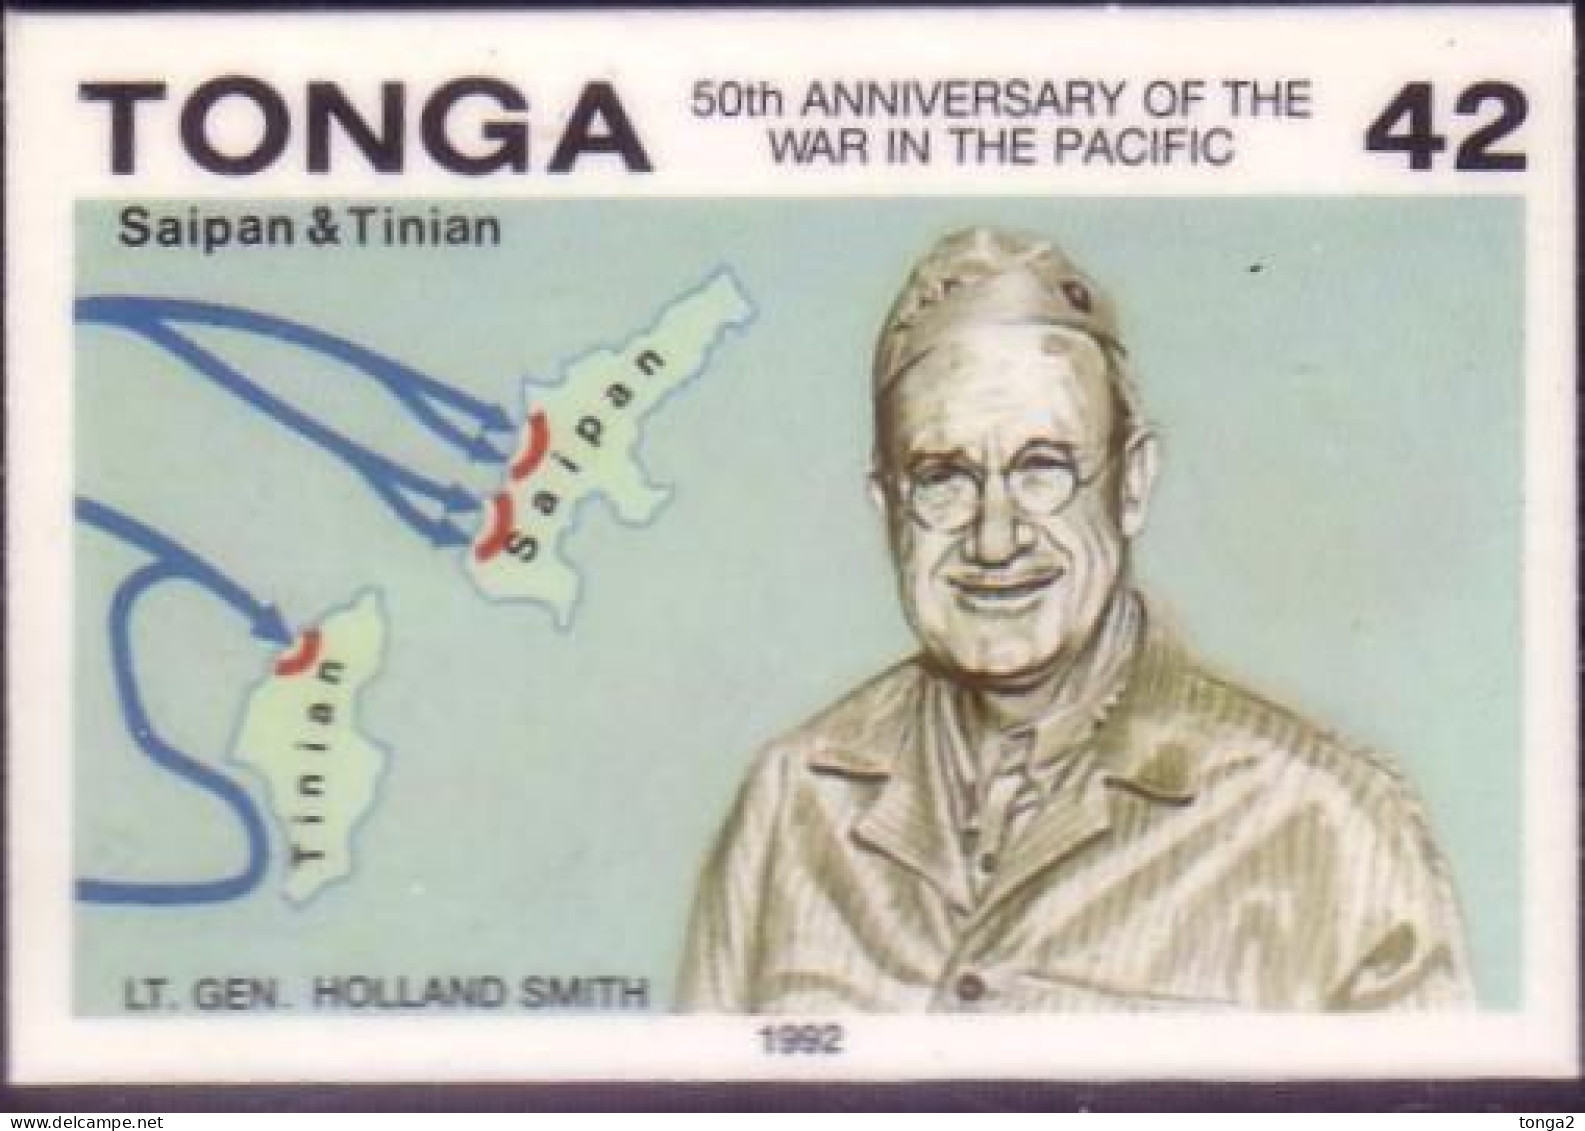 TONGA 1992 Cromalin Proof - Lt Gen Holland Smith, Saipan, Tinian - War Map  - 4 Exist - Tonga (1970-...)